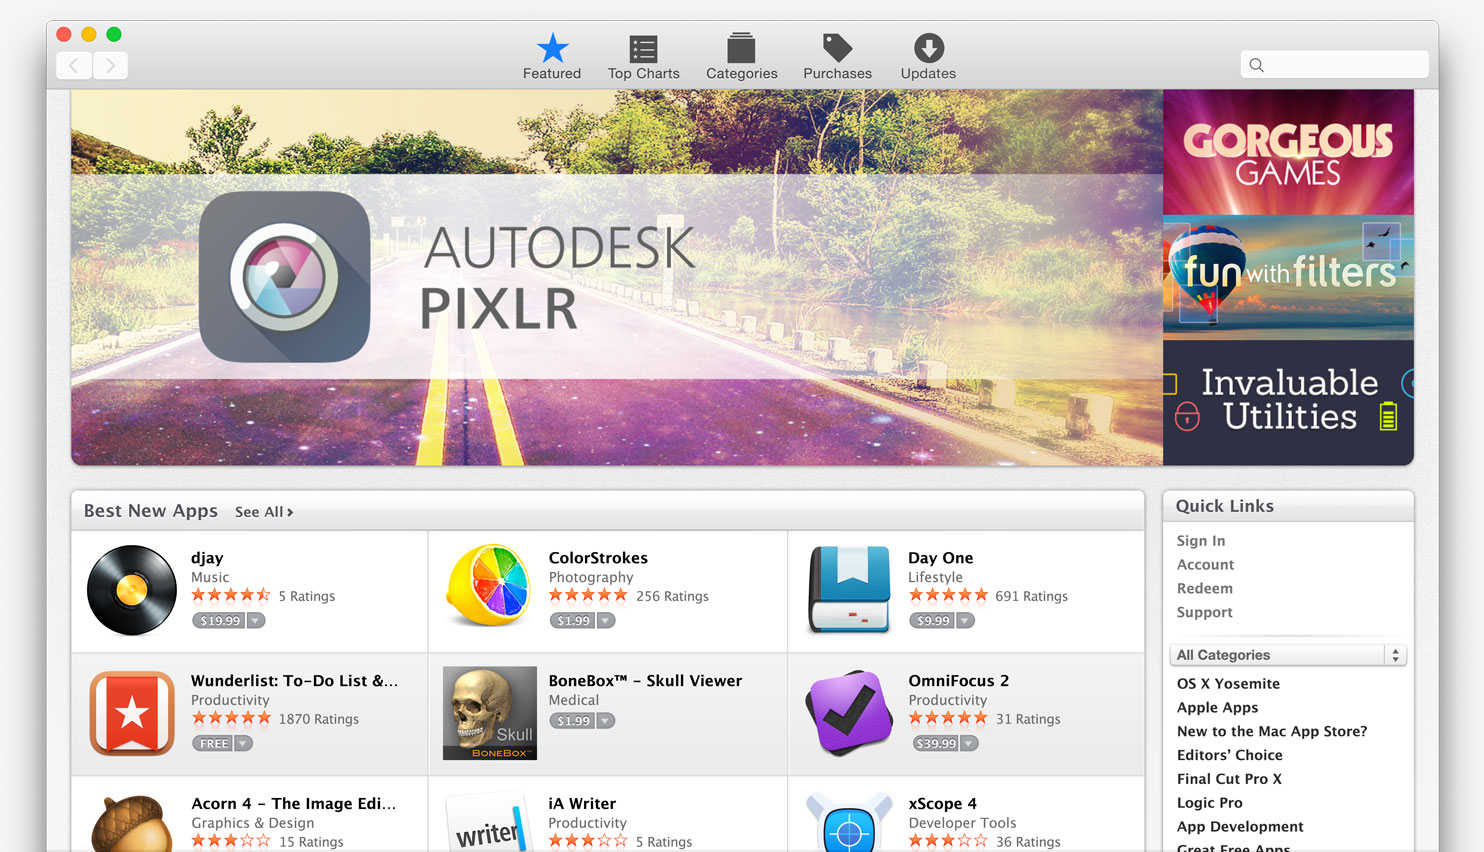 Apple Apps Free Download Macbook Pro